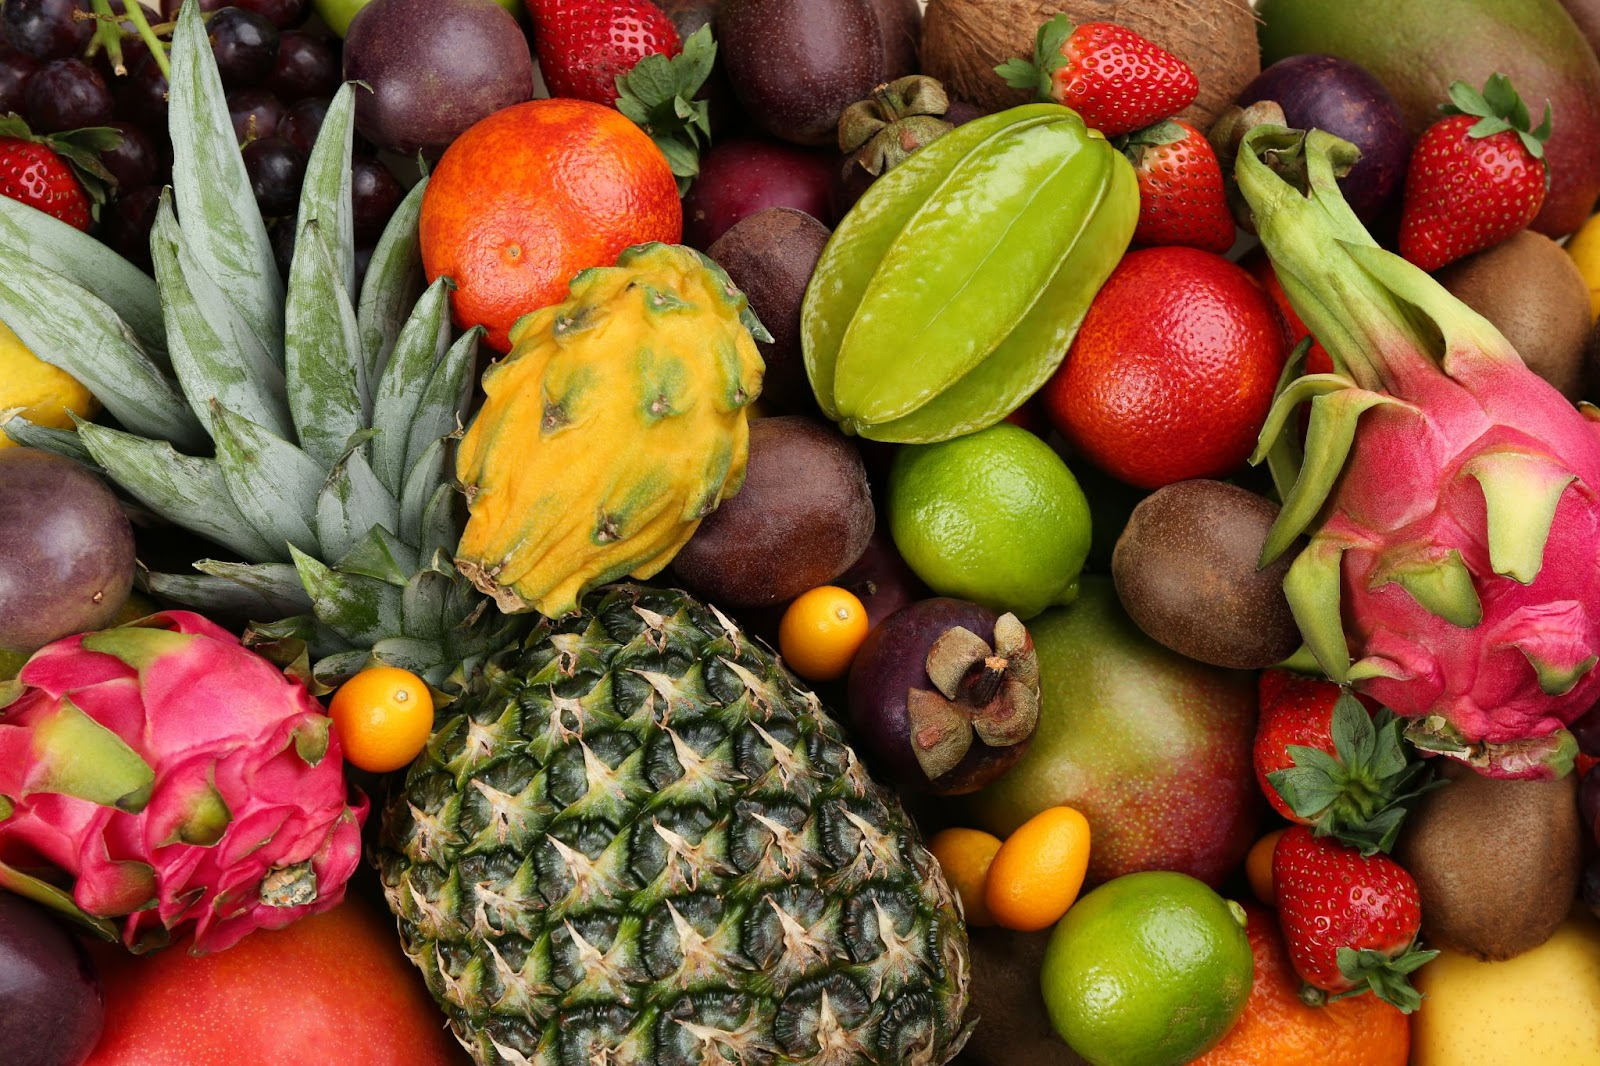 Frutas tropicales de Colombia